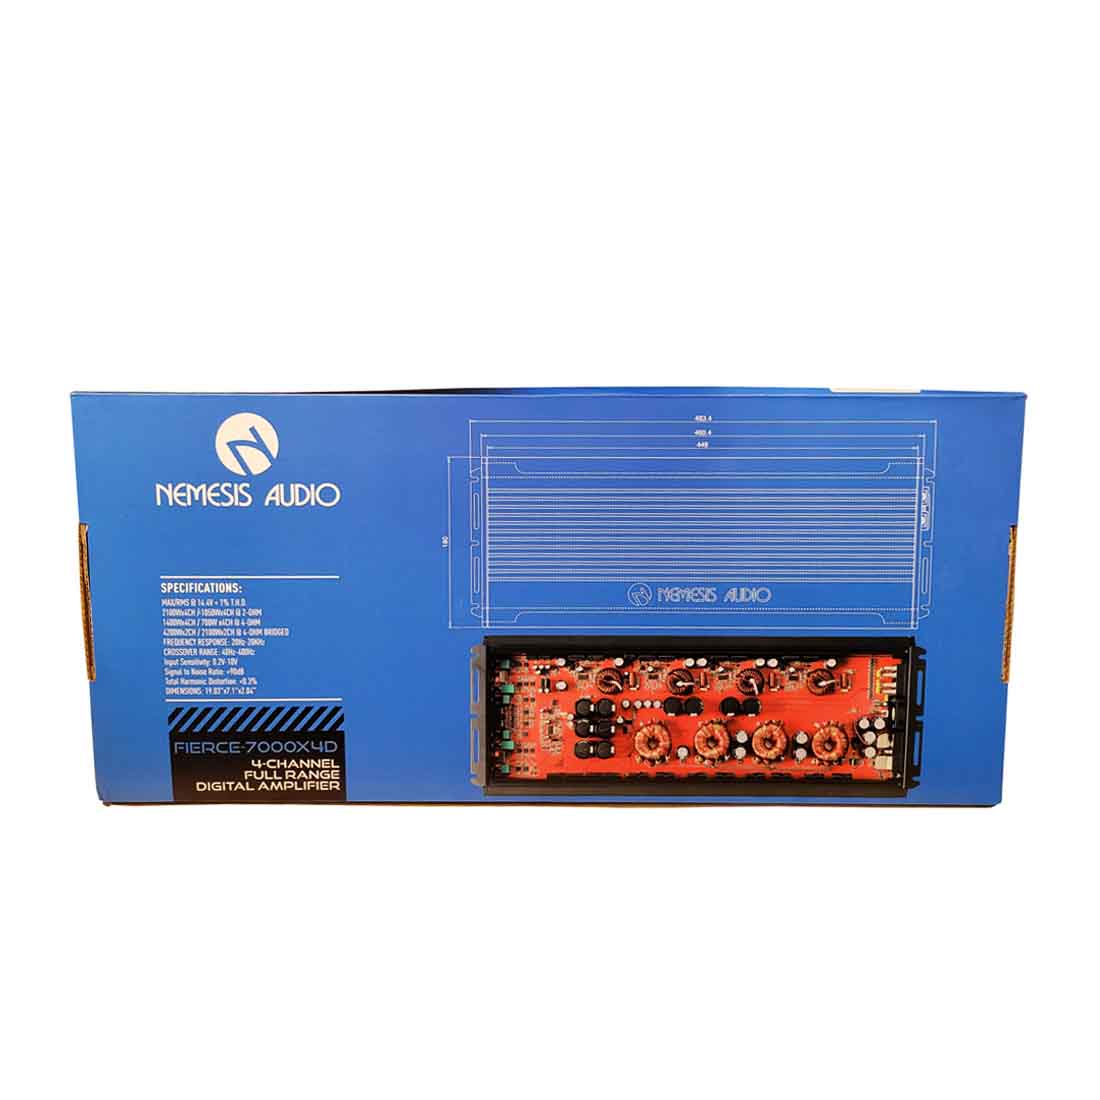 Nemesis Audio FIERCE-7000X4D 4-Channel 2100W x 4CH Full-Range Digital Amplifier